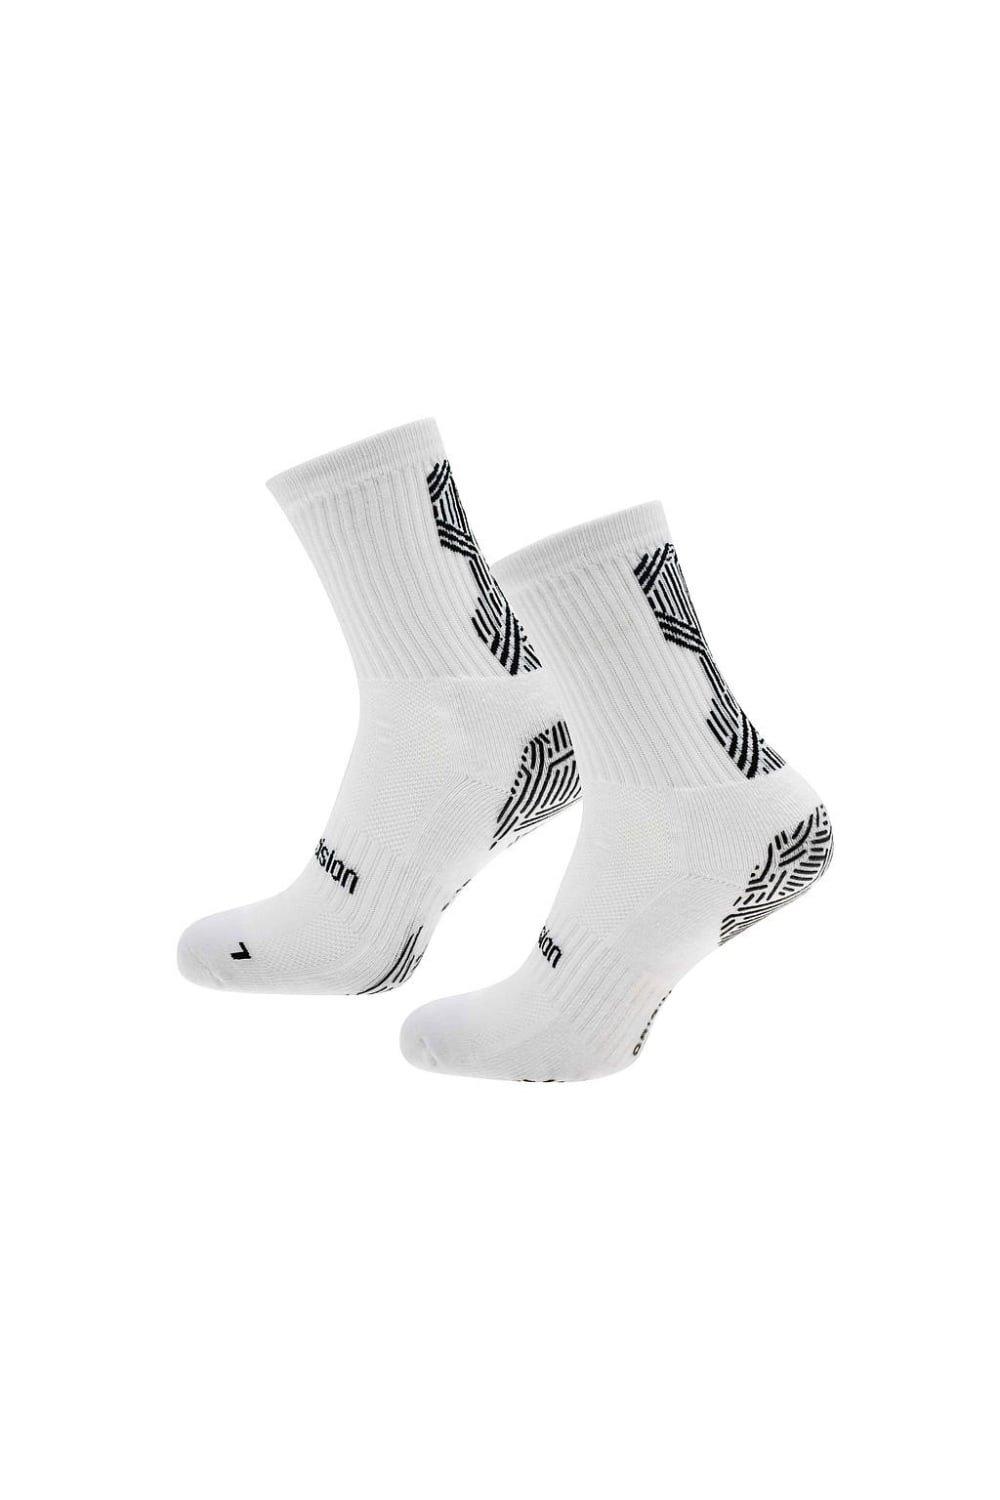 Origin.0 Gripped Anti-Slip Sports Socks